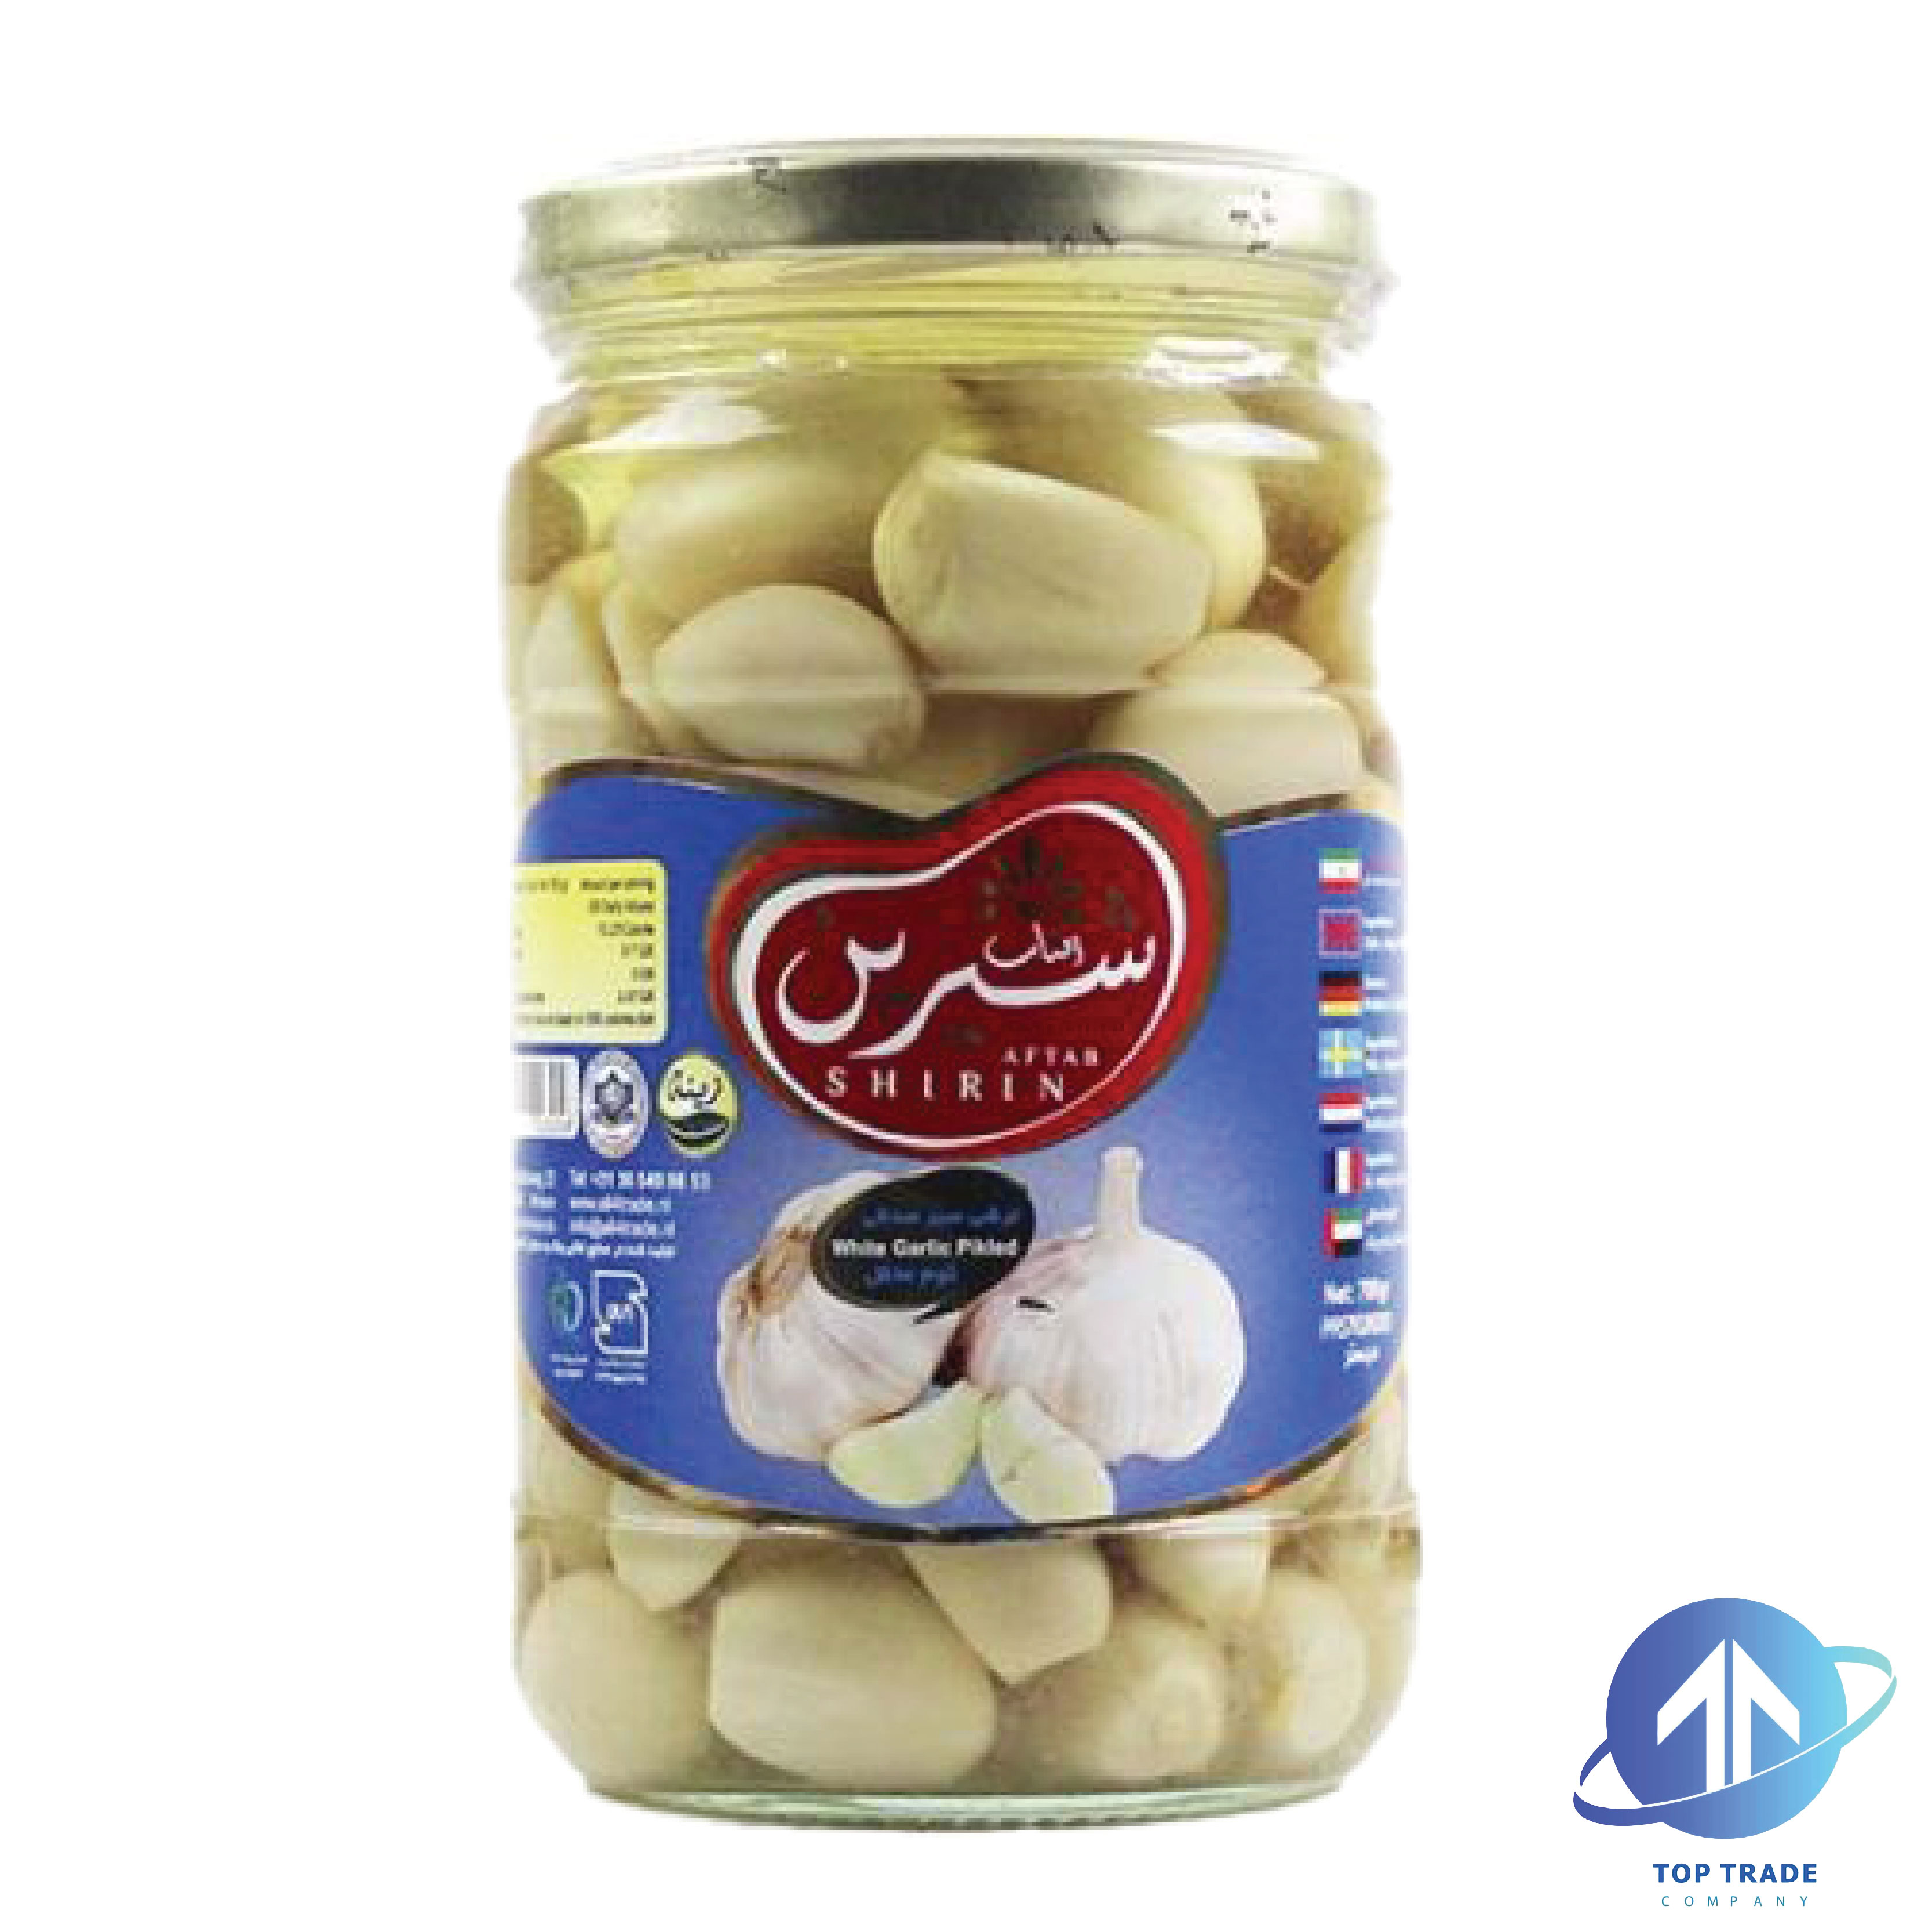 Aftab shirin Garlic pickles 700gr 